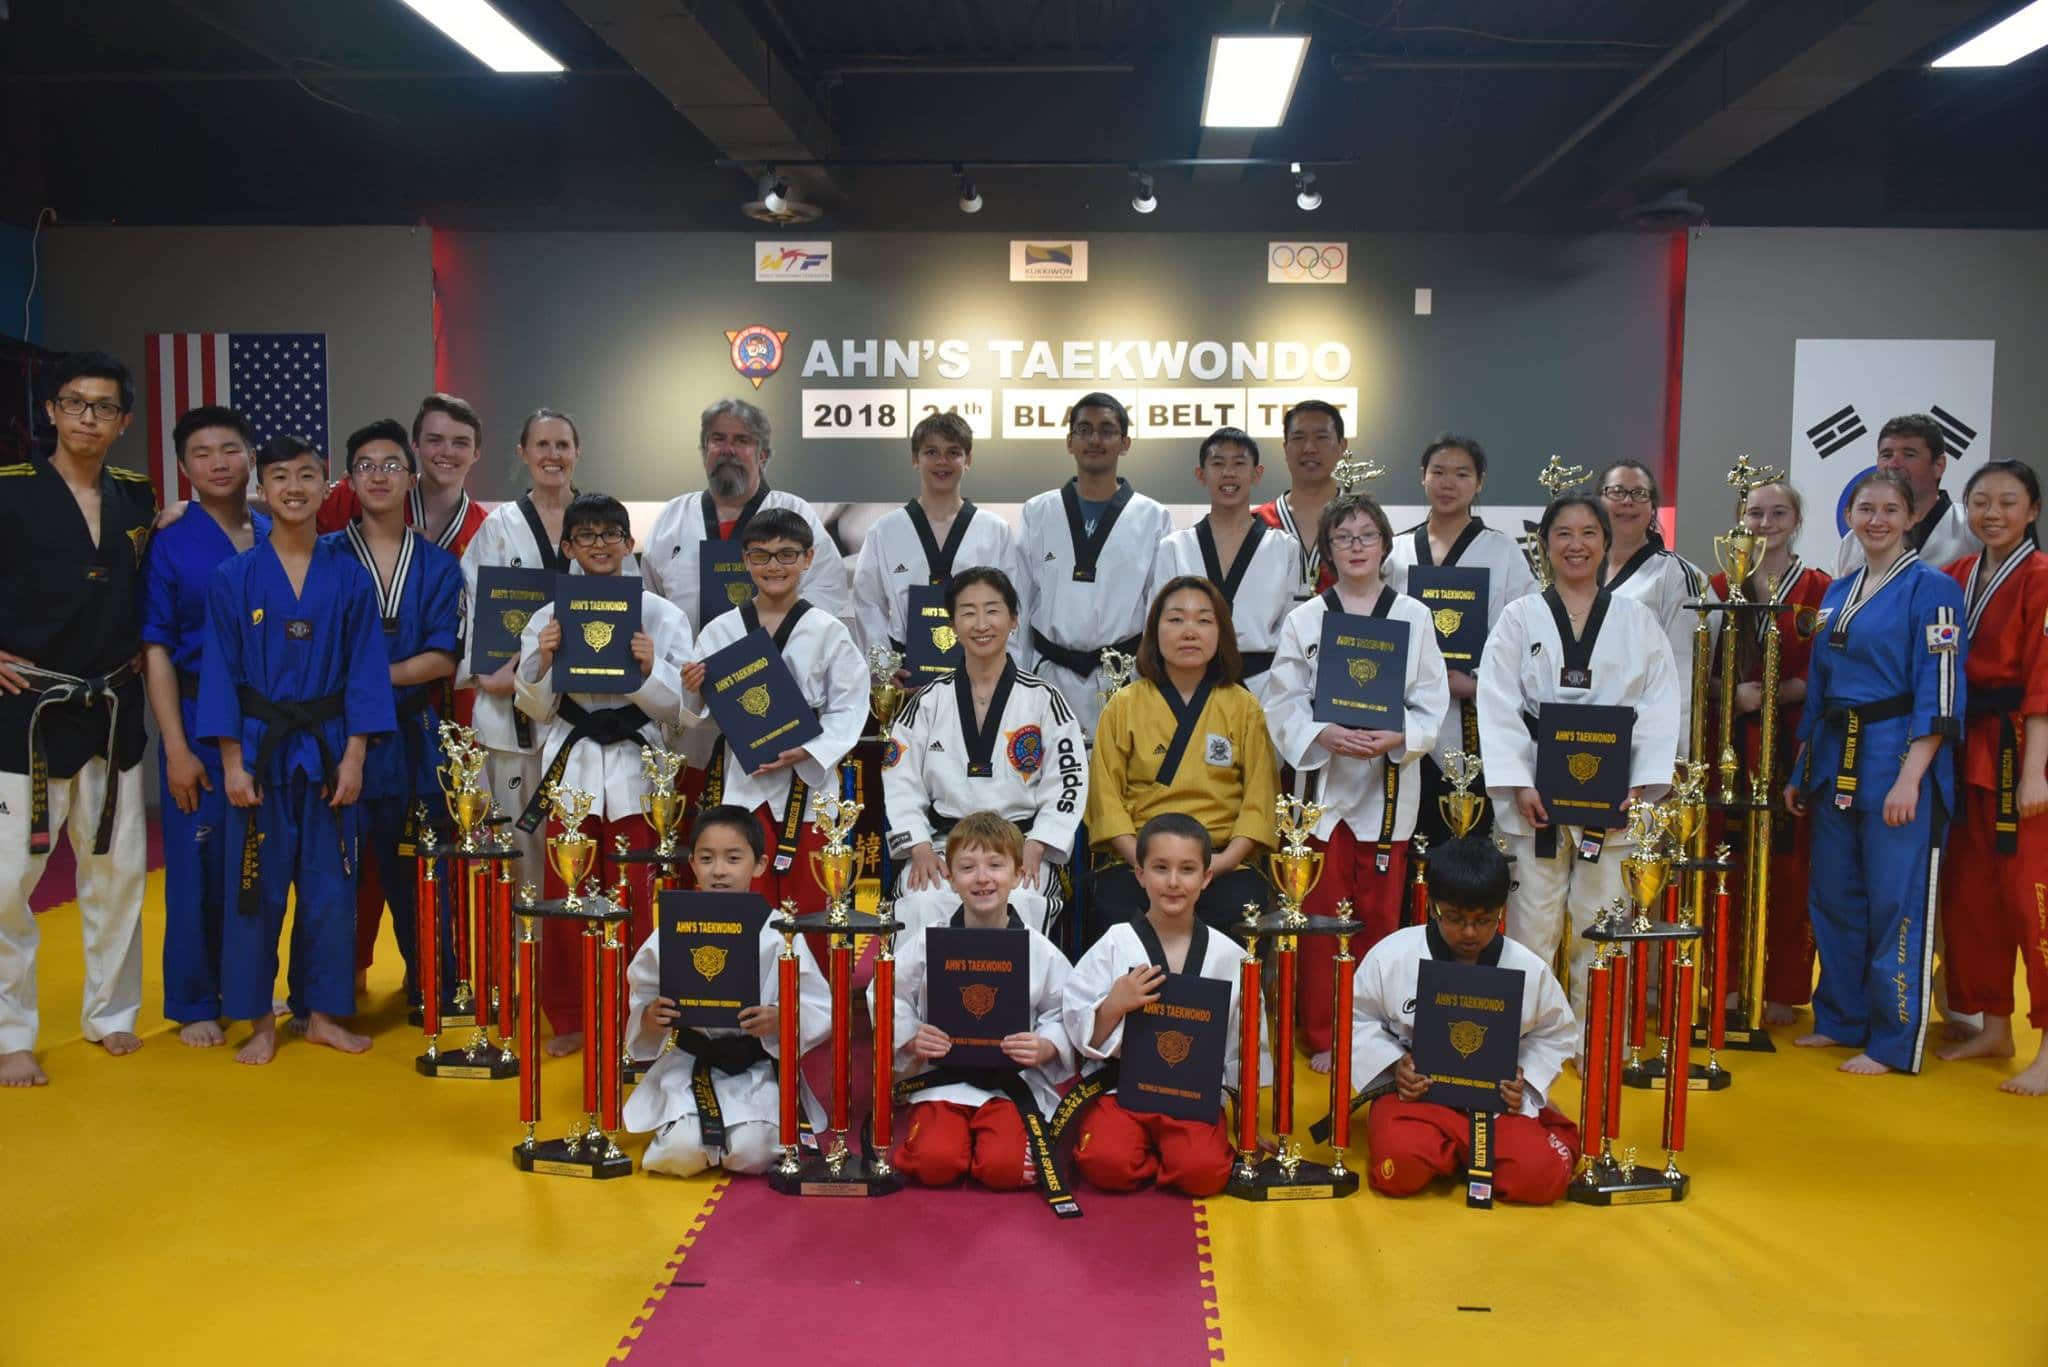 Ahn's Taekwondo Lawrenceville Grand Master Jae Yoon Ahn